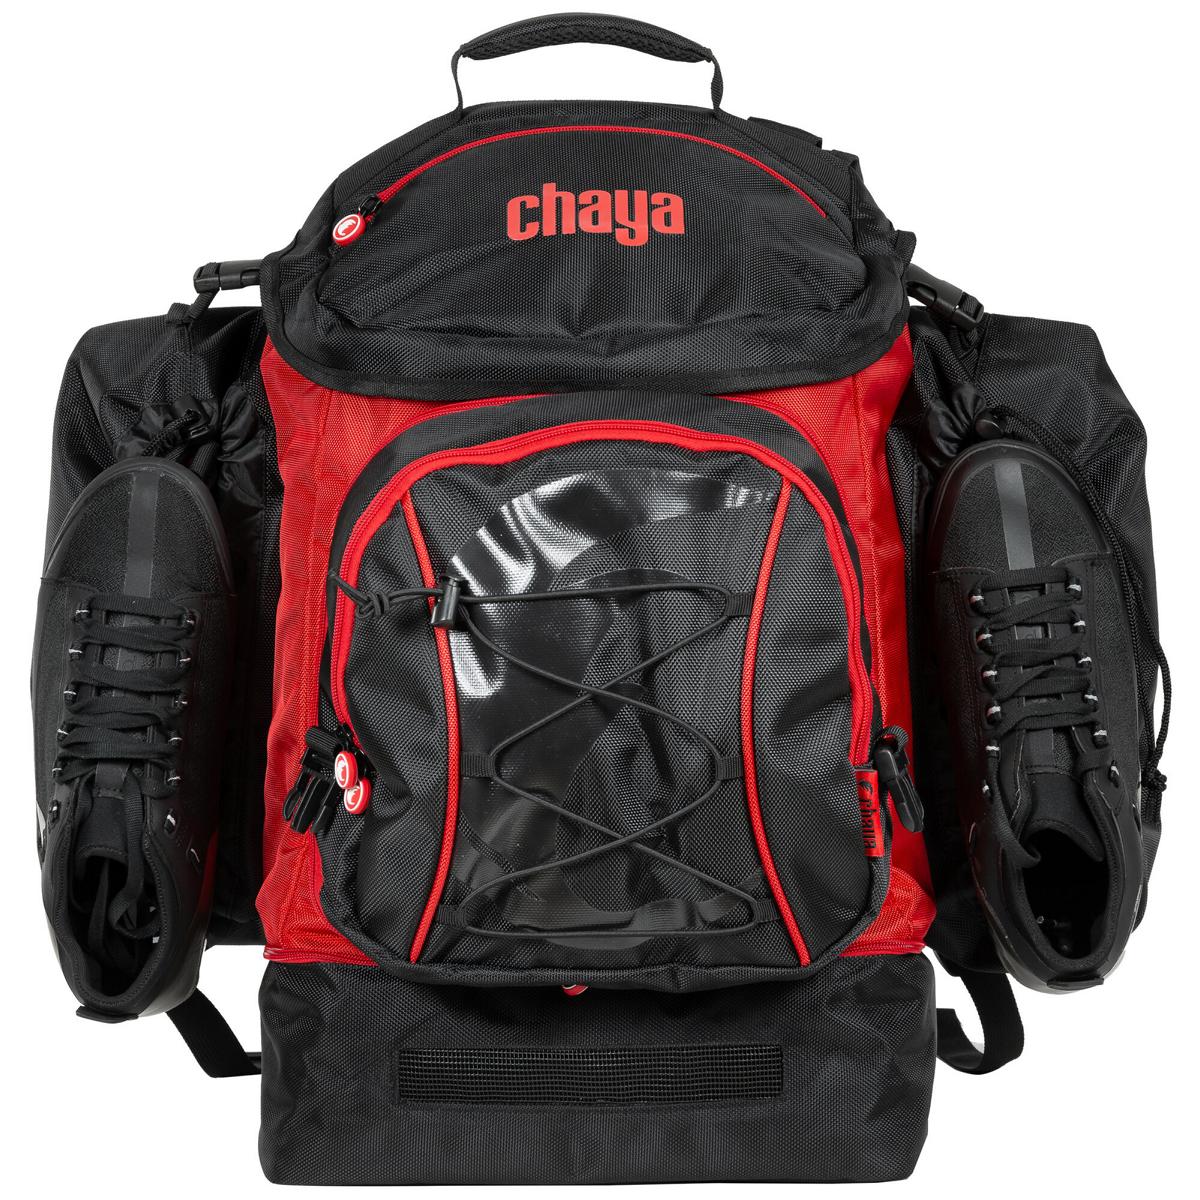 Chaya Pro Bag Rucksack